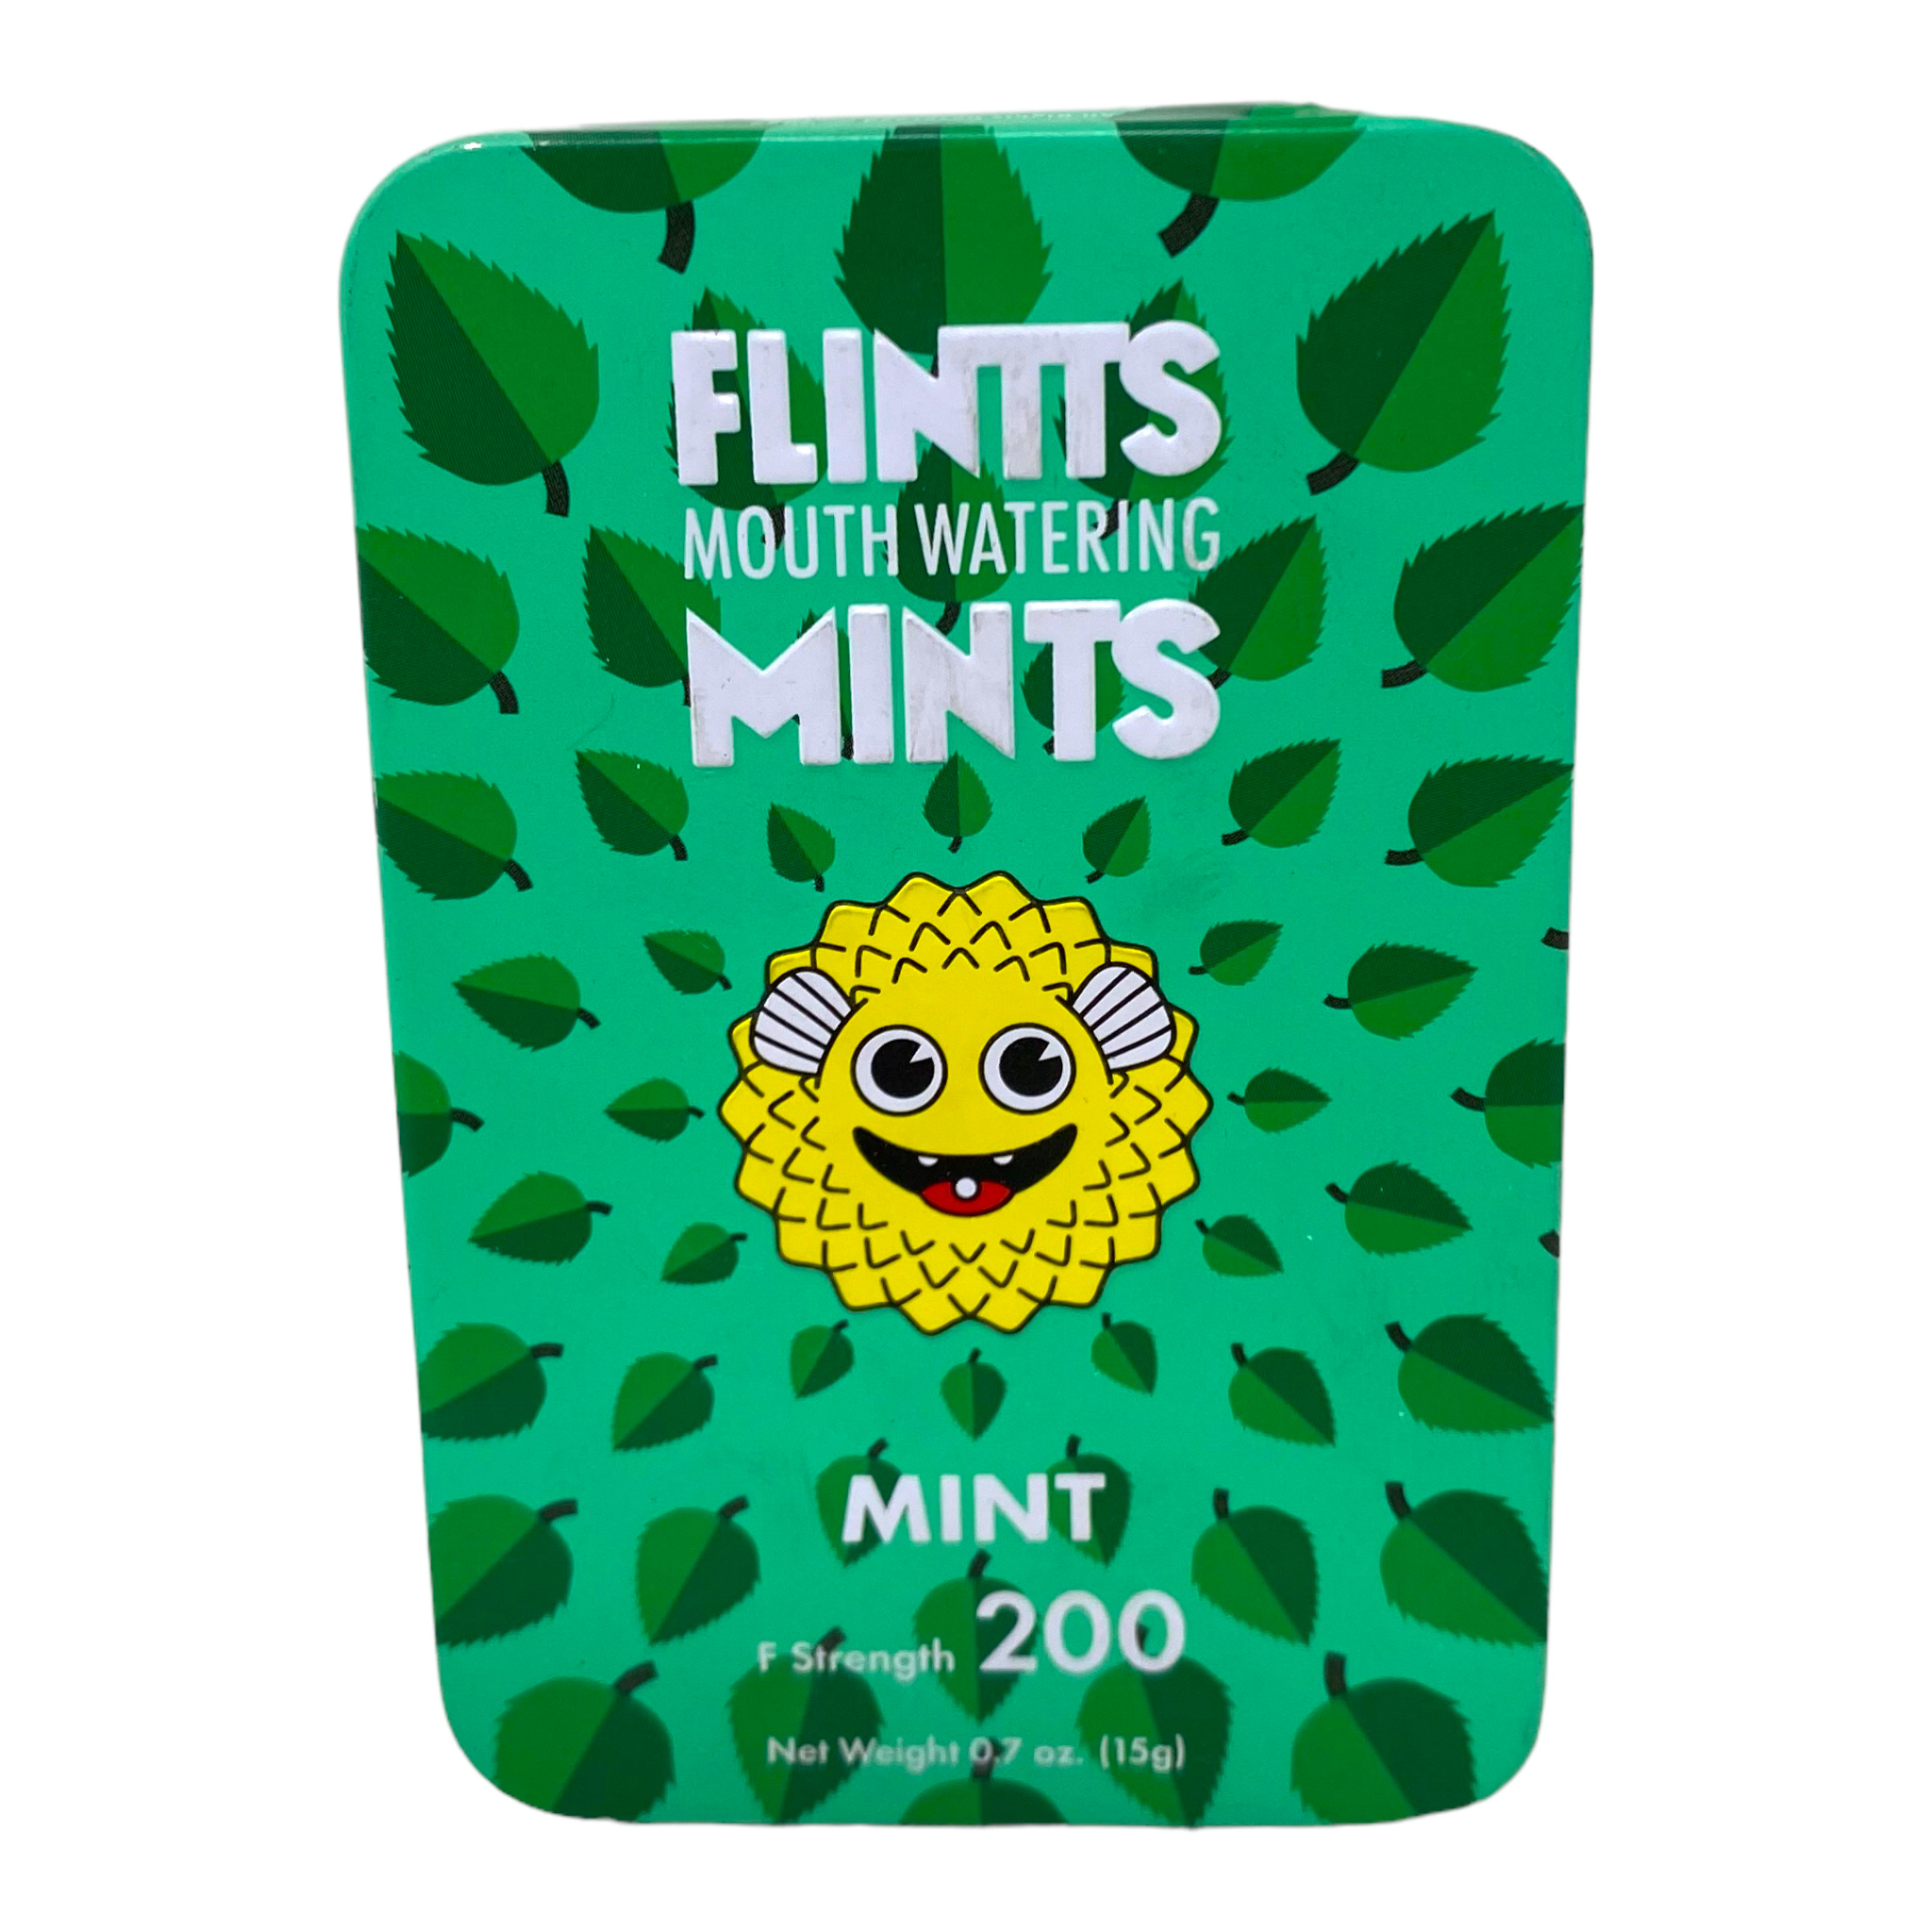 Flints Mouth Watering Mints